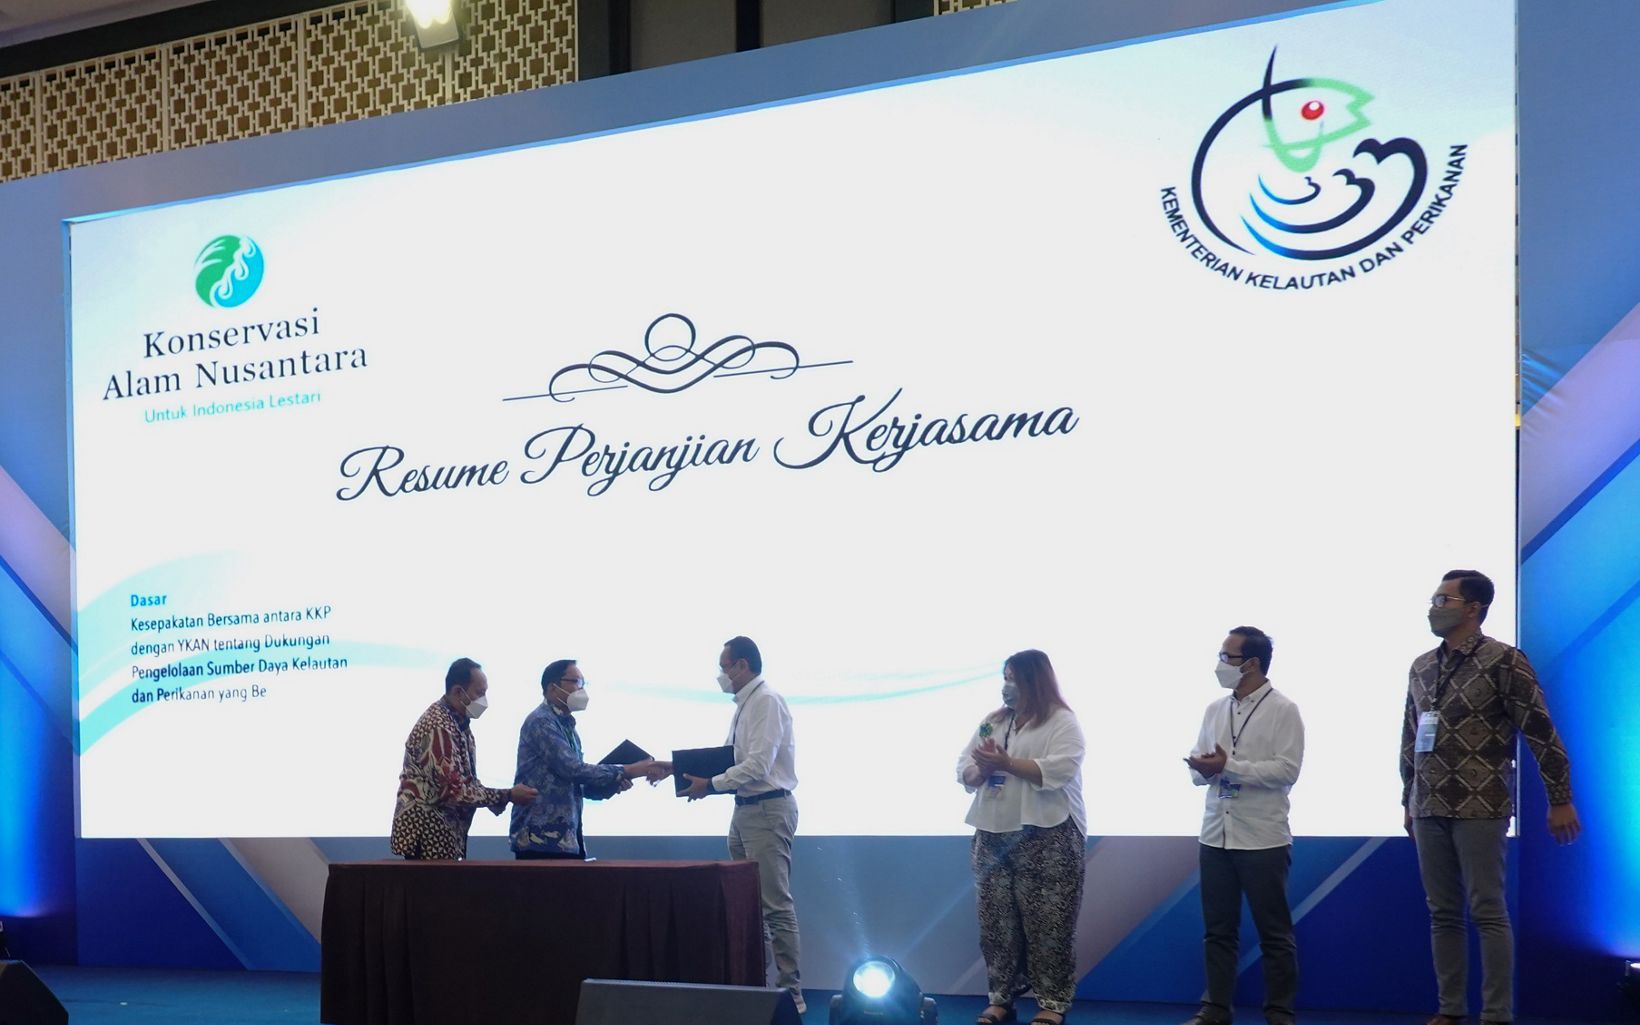 Perjanjian Kerjasama Kesepakatan bersama KKP dan YKAN tentang dukungan pengelolaan sumber daya kelautan dan perikanan yang berkelanjutan © Nugroho Arif Prabowo